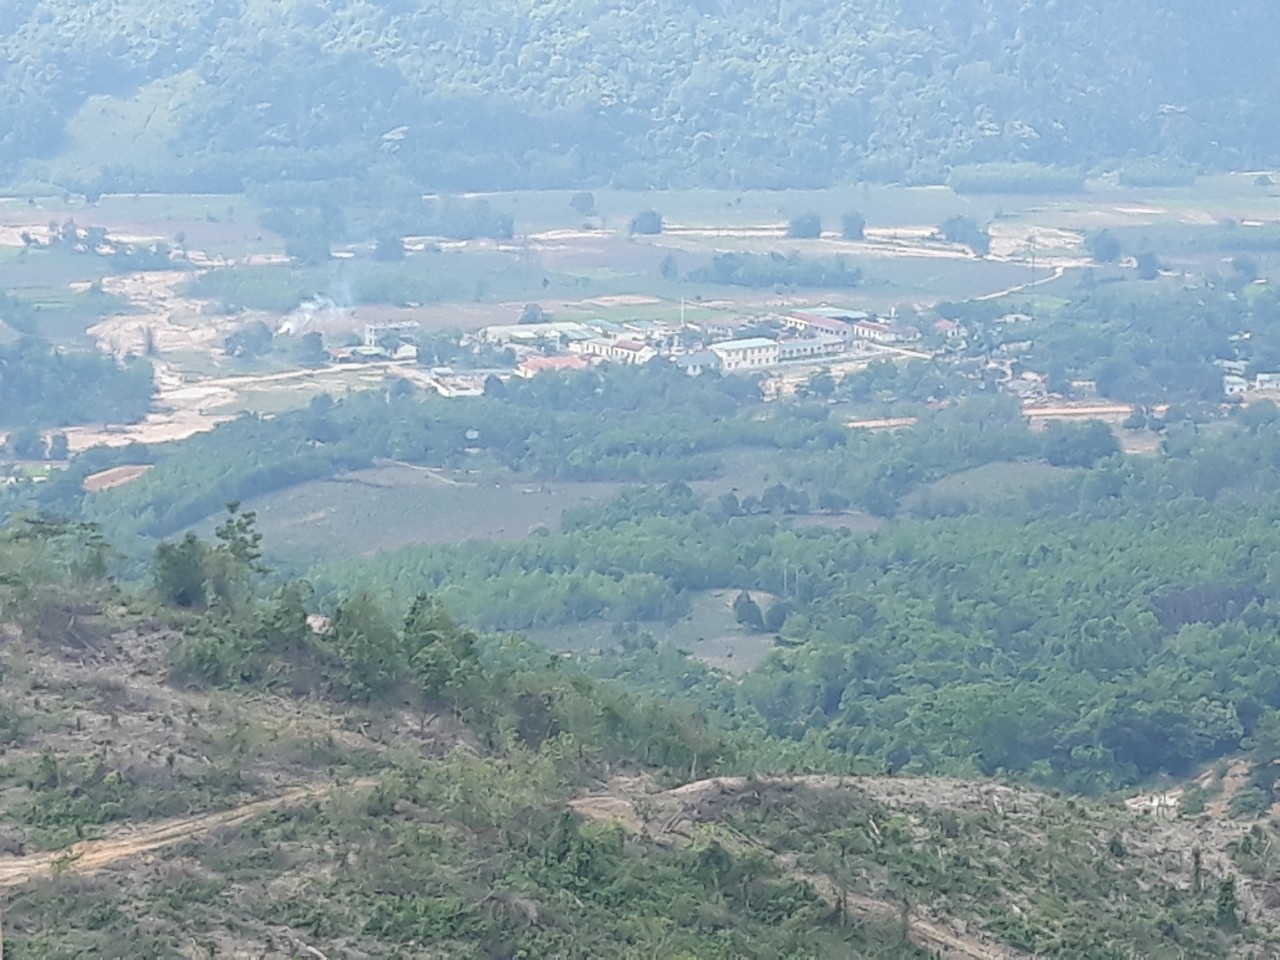 Thung lũng Tà Rùng nhìn từ giữa lưng đèo Sa Mù trên đường Hồ Chí Minh nhánh tây